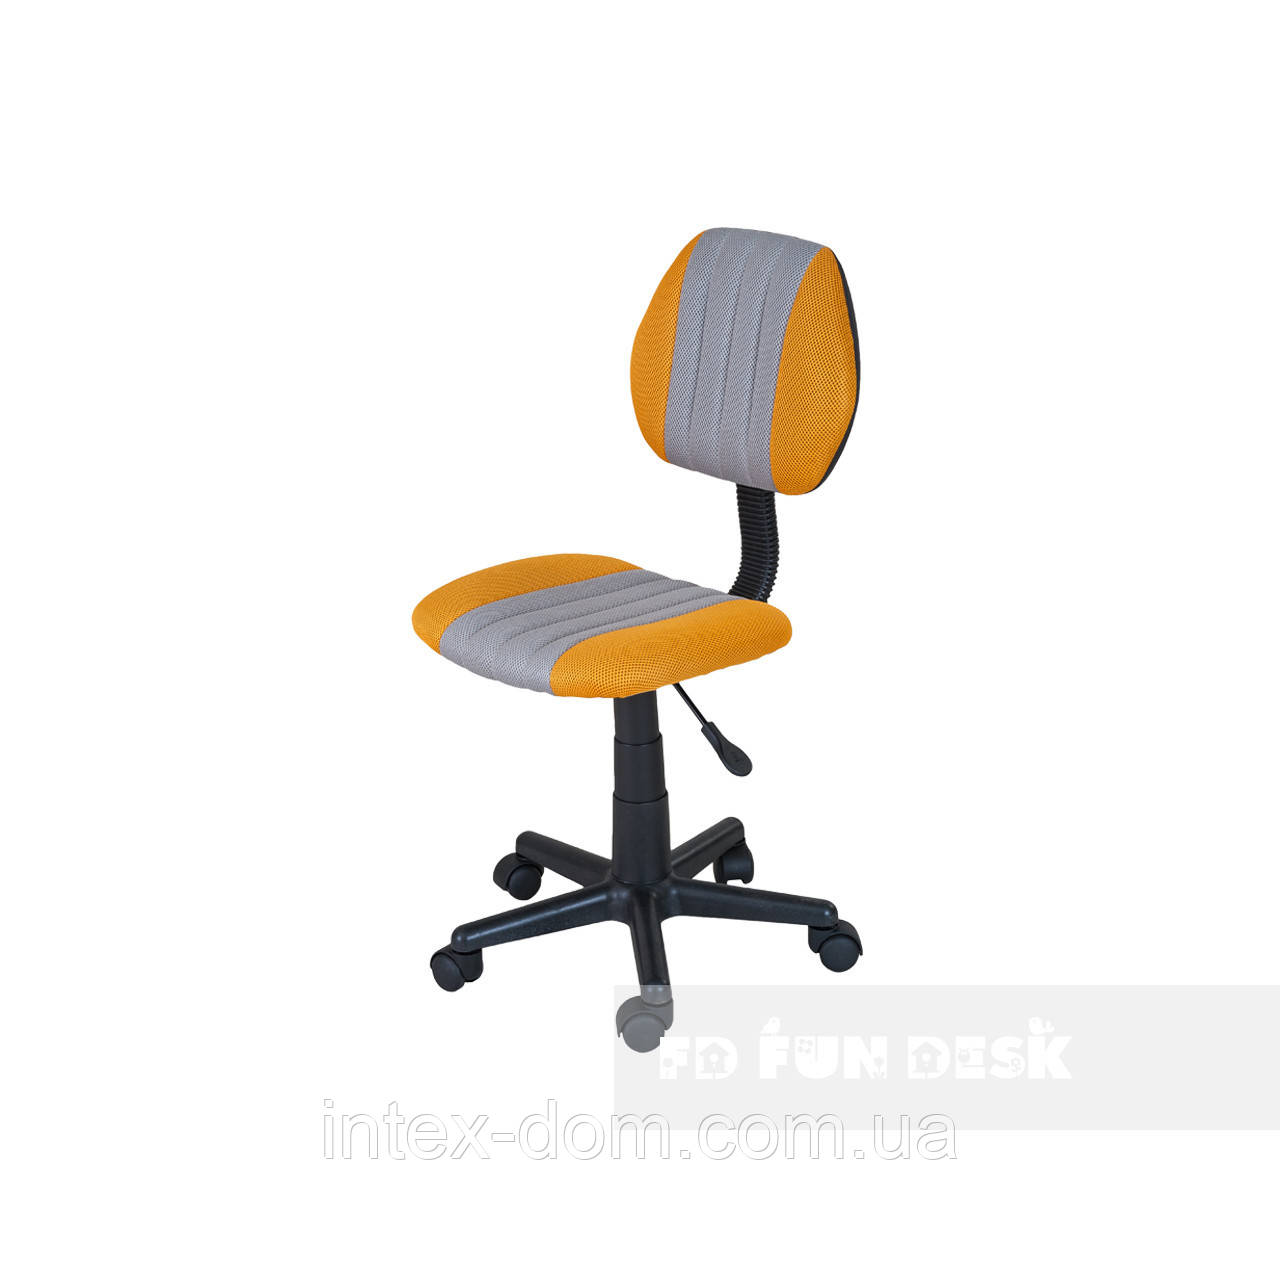 Дитяче комп'ютерне крісло FunDesk LST4 Yellow-Grey